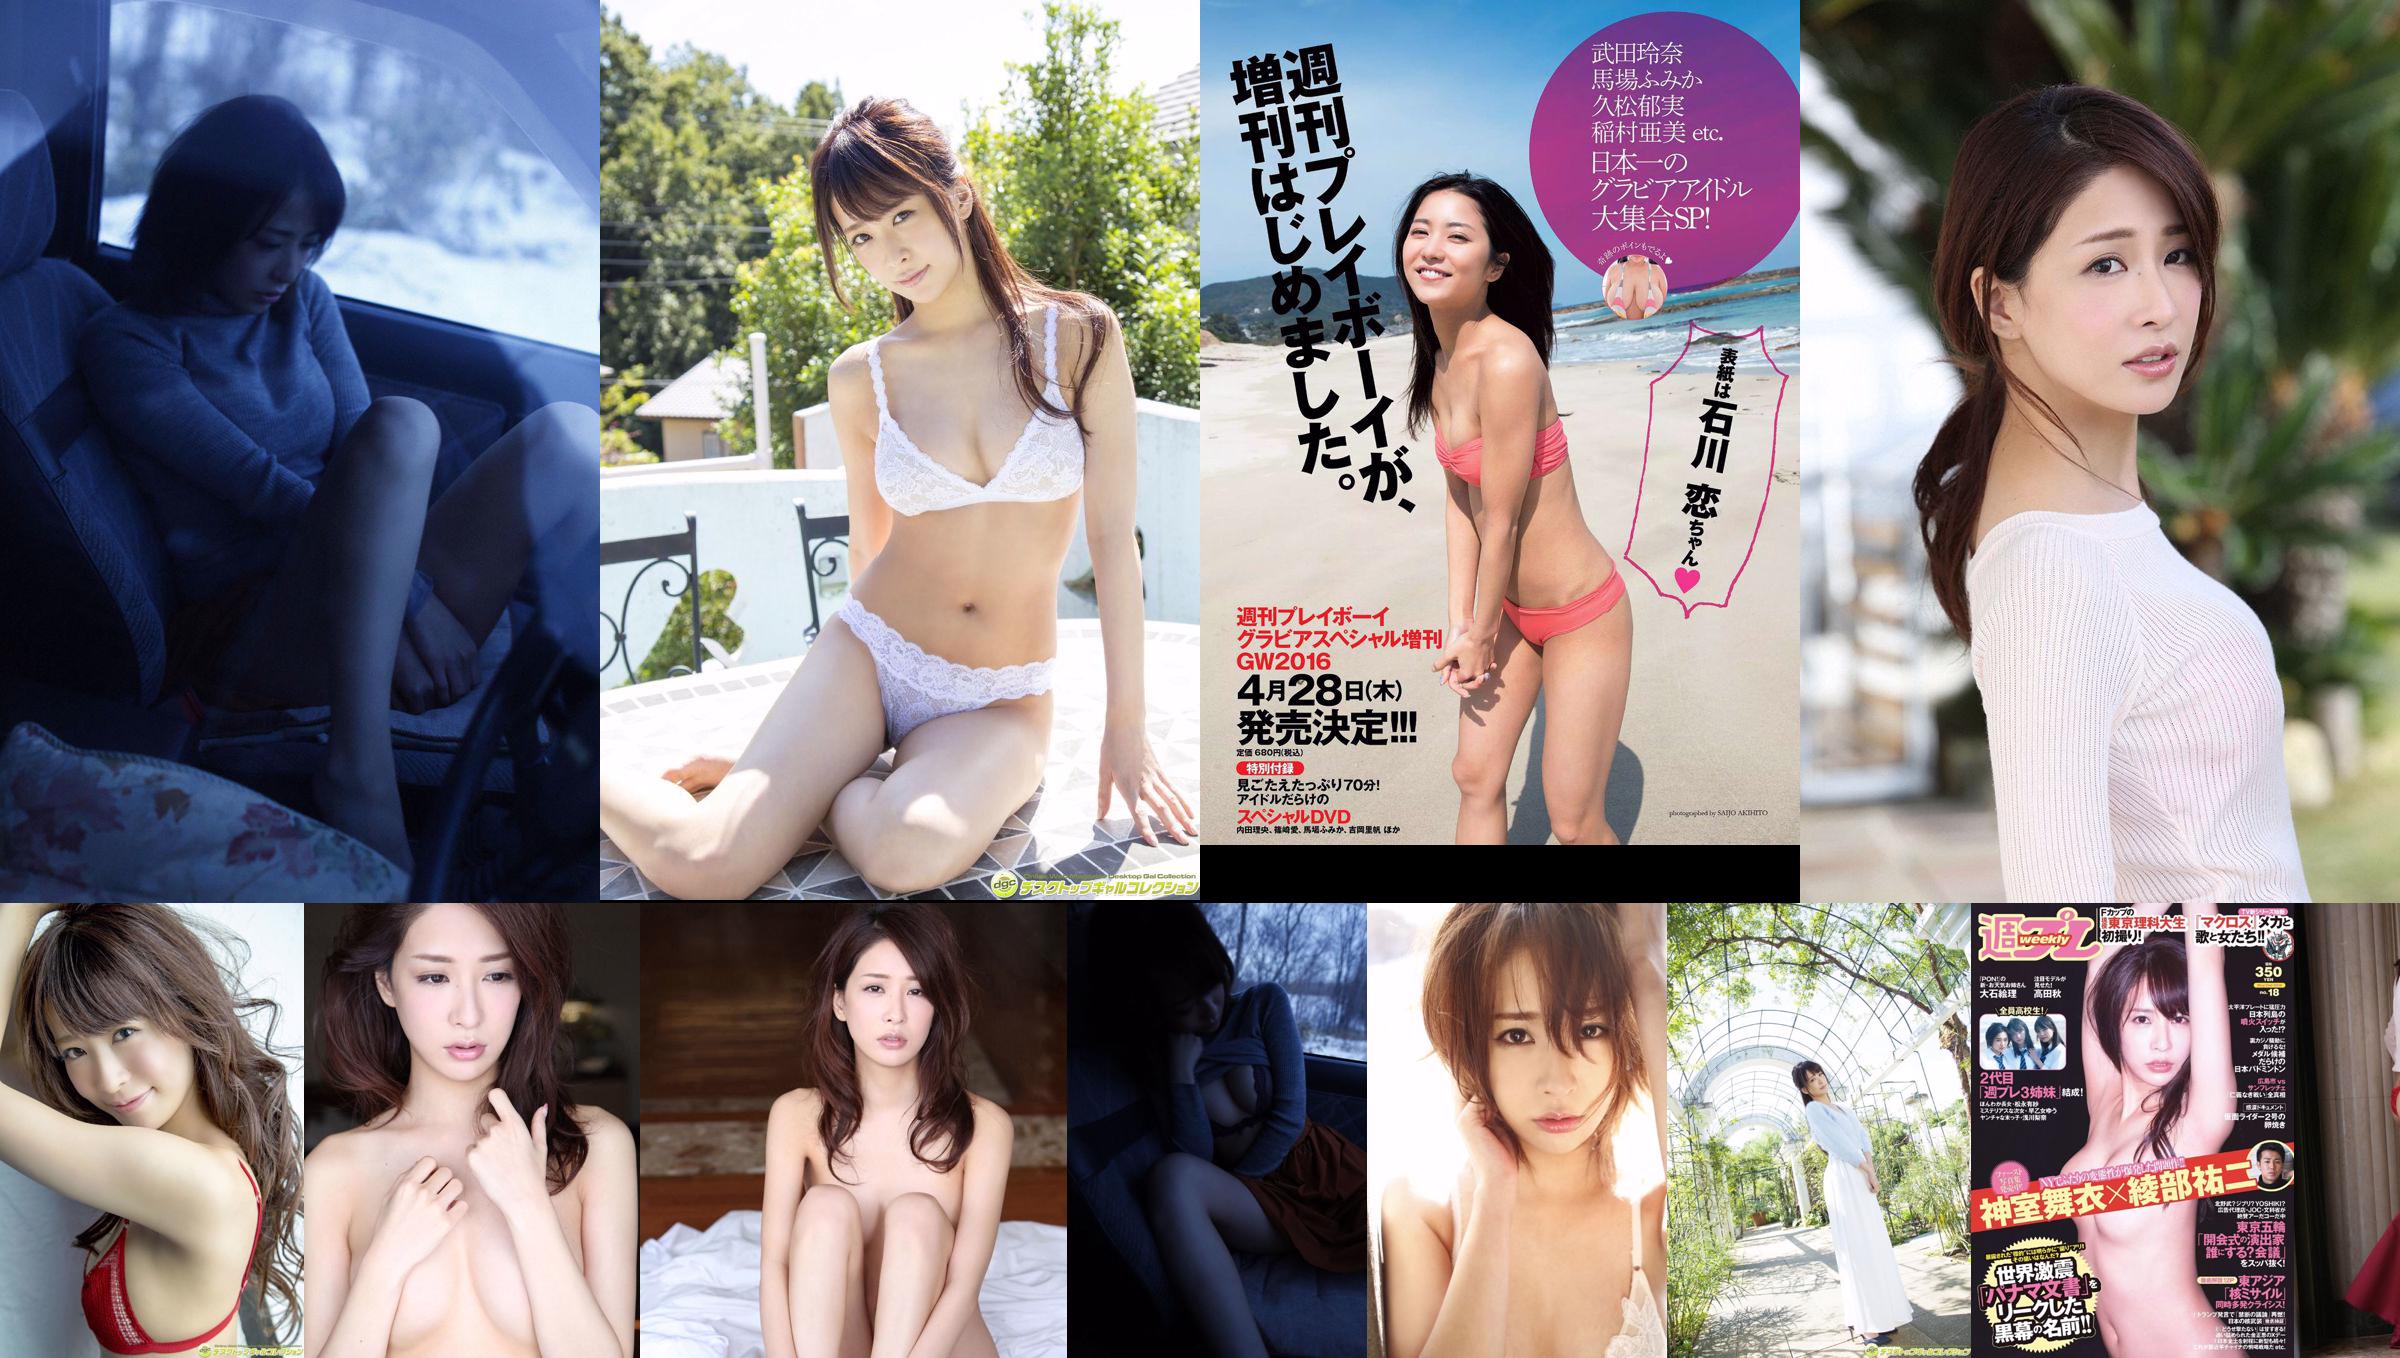 Mai Kamuro Arisa Matsunaga Yu Saotome Rina Asakawa Shu Takada Ayana Takeda Eri Oishi [Playboy Semanal] 2016 Fotografia No.18 No.ba085c Página 3